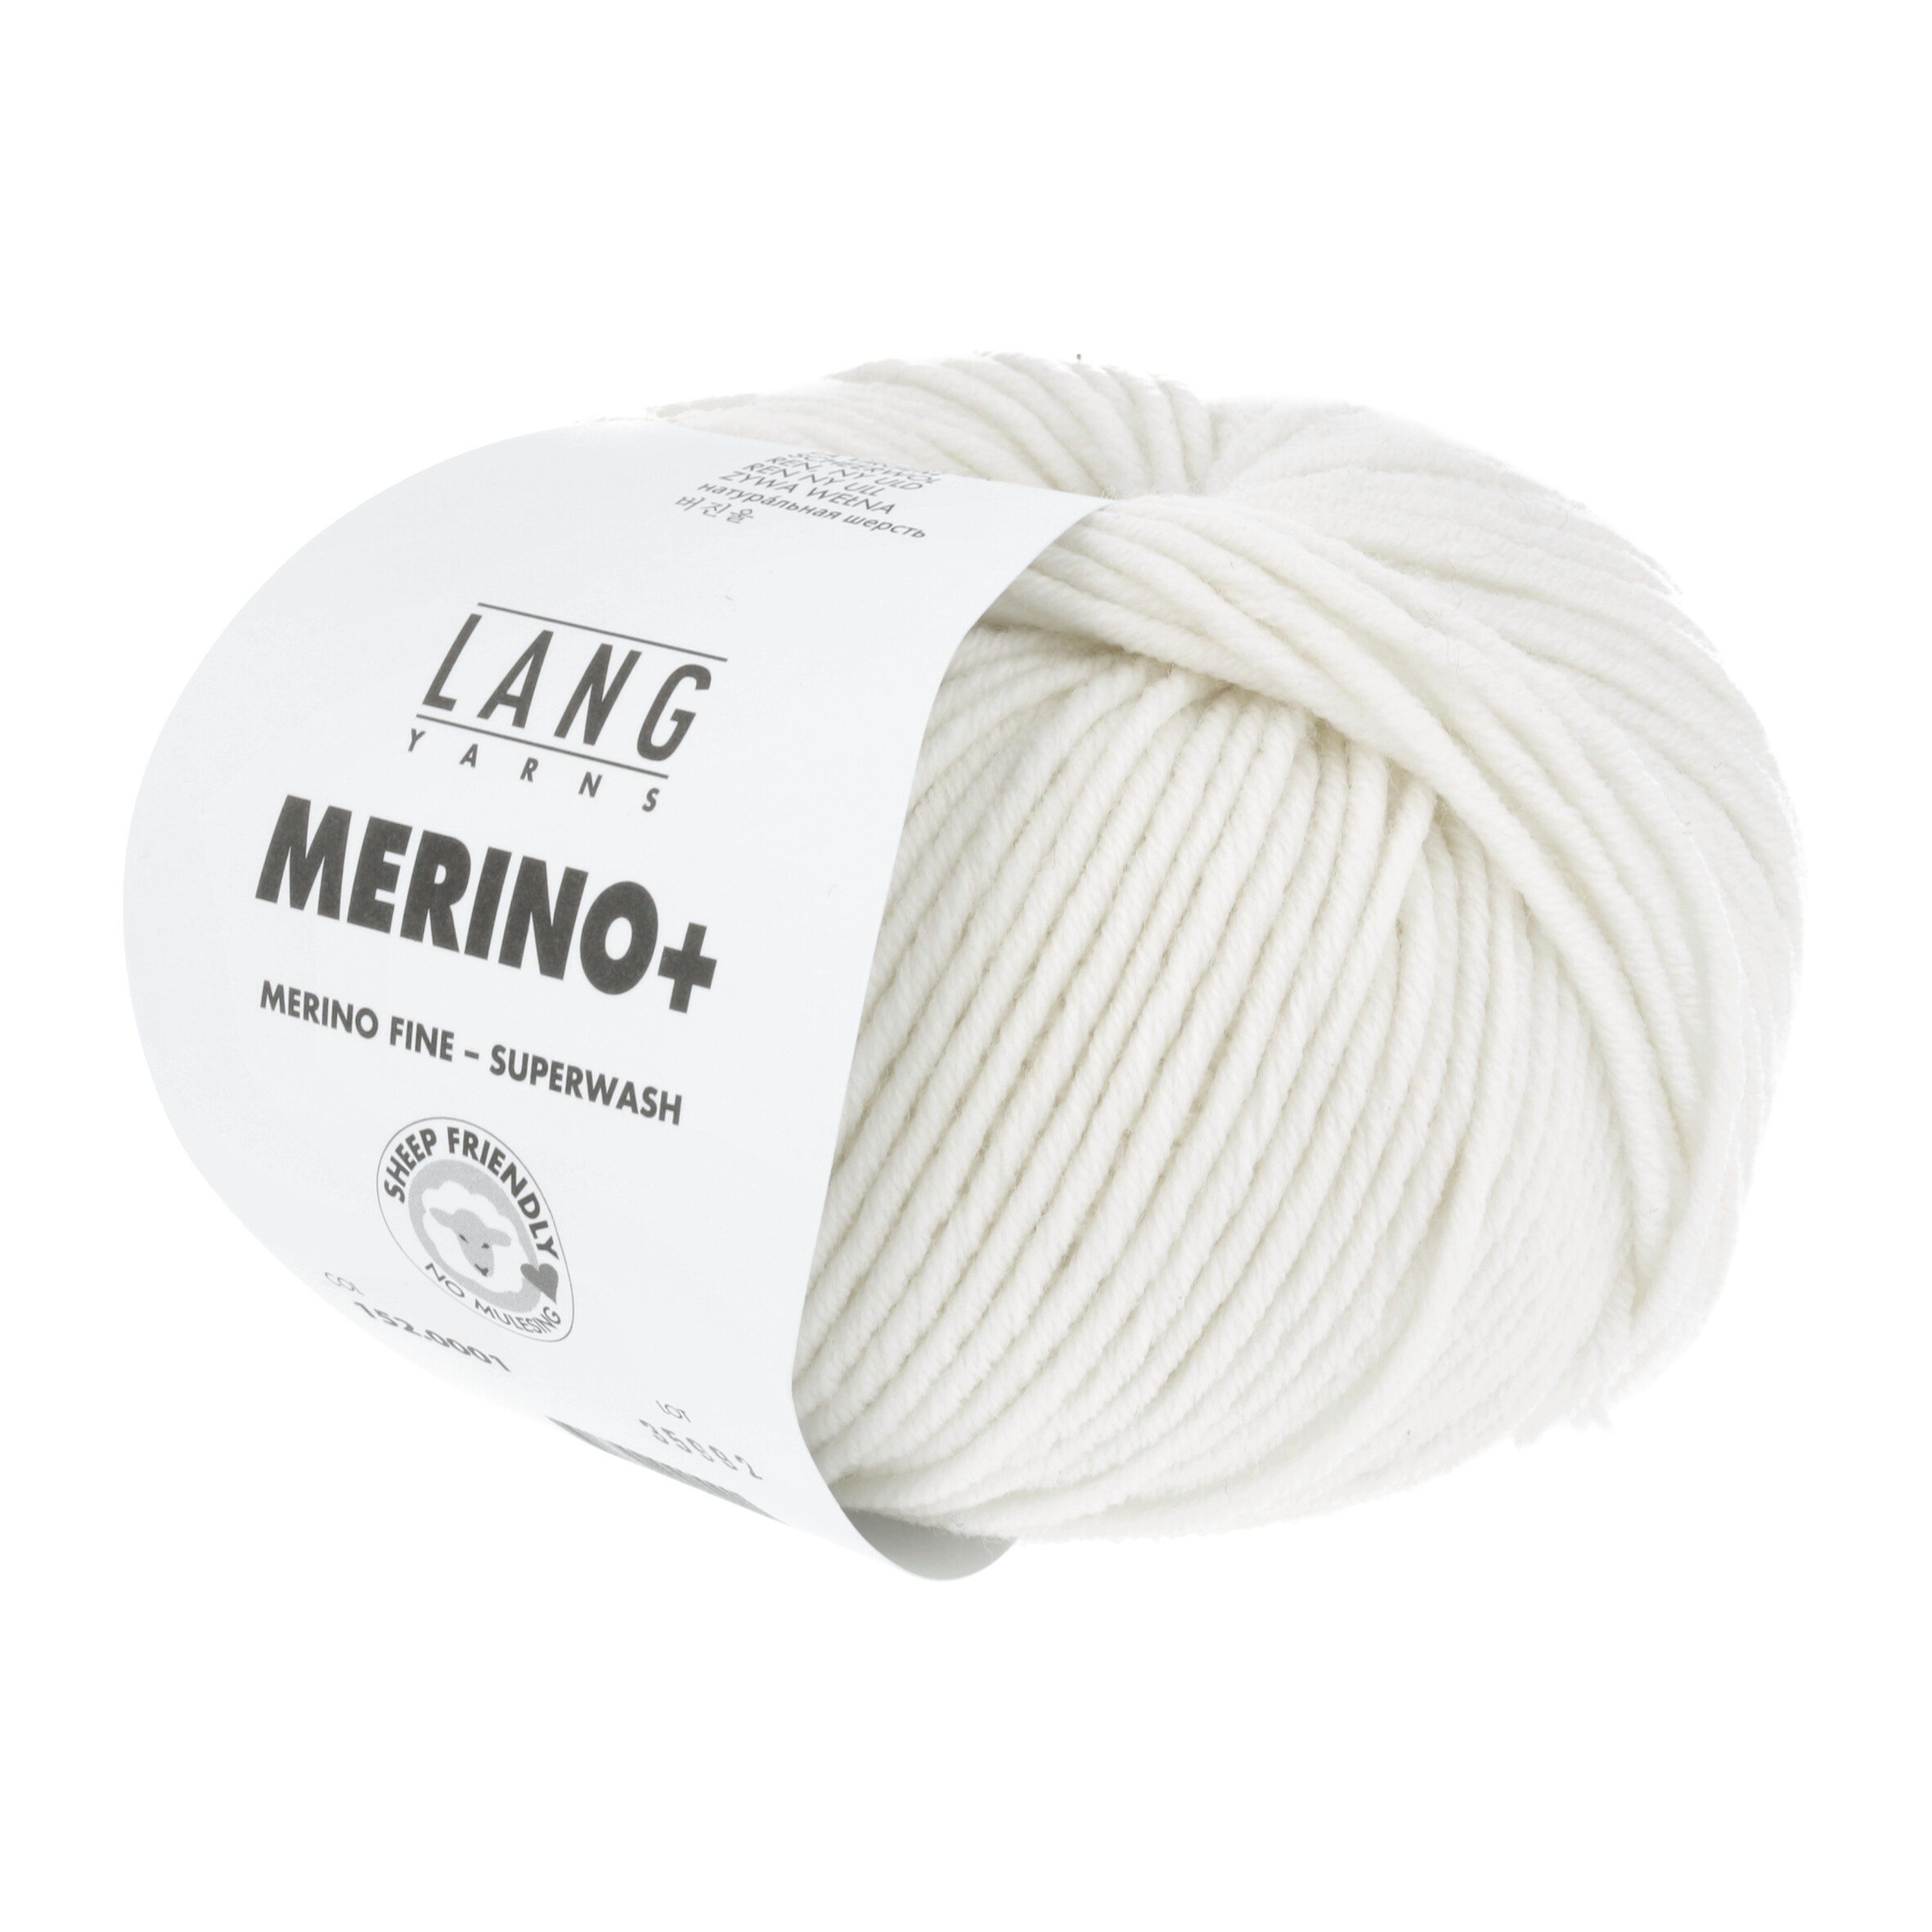 LANG MERINO + 50GR 0001 BIANCO